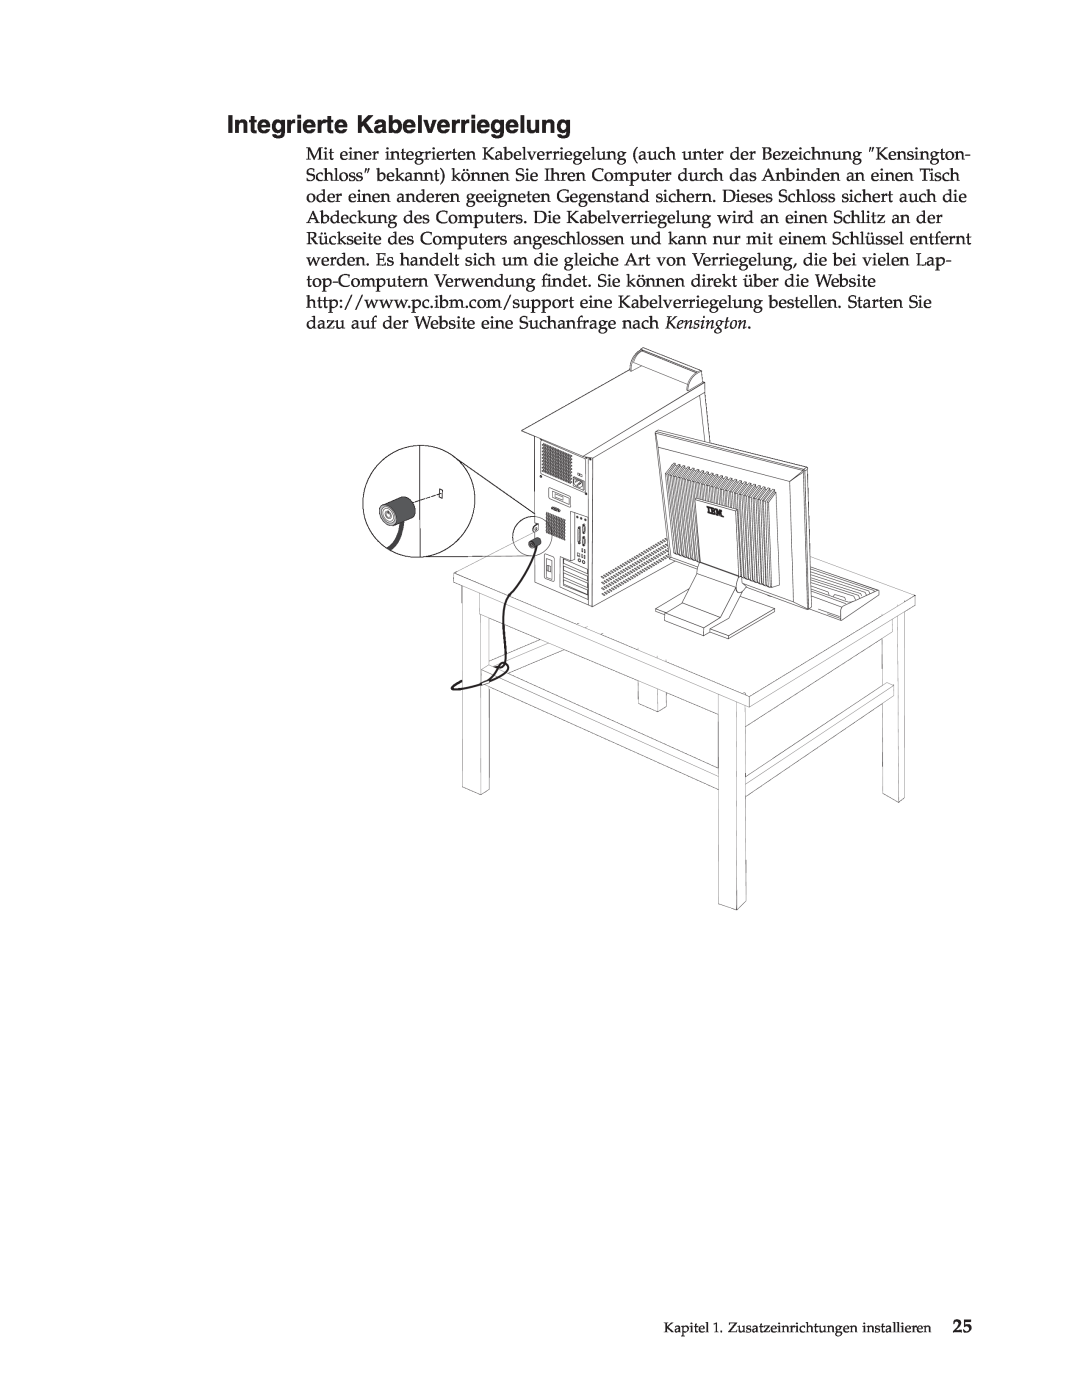 IBM 9213, 9212 manual Integrierte Kabelverriegelung, Kapitel 1. Zusatzeinrichtungen installieren 